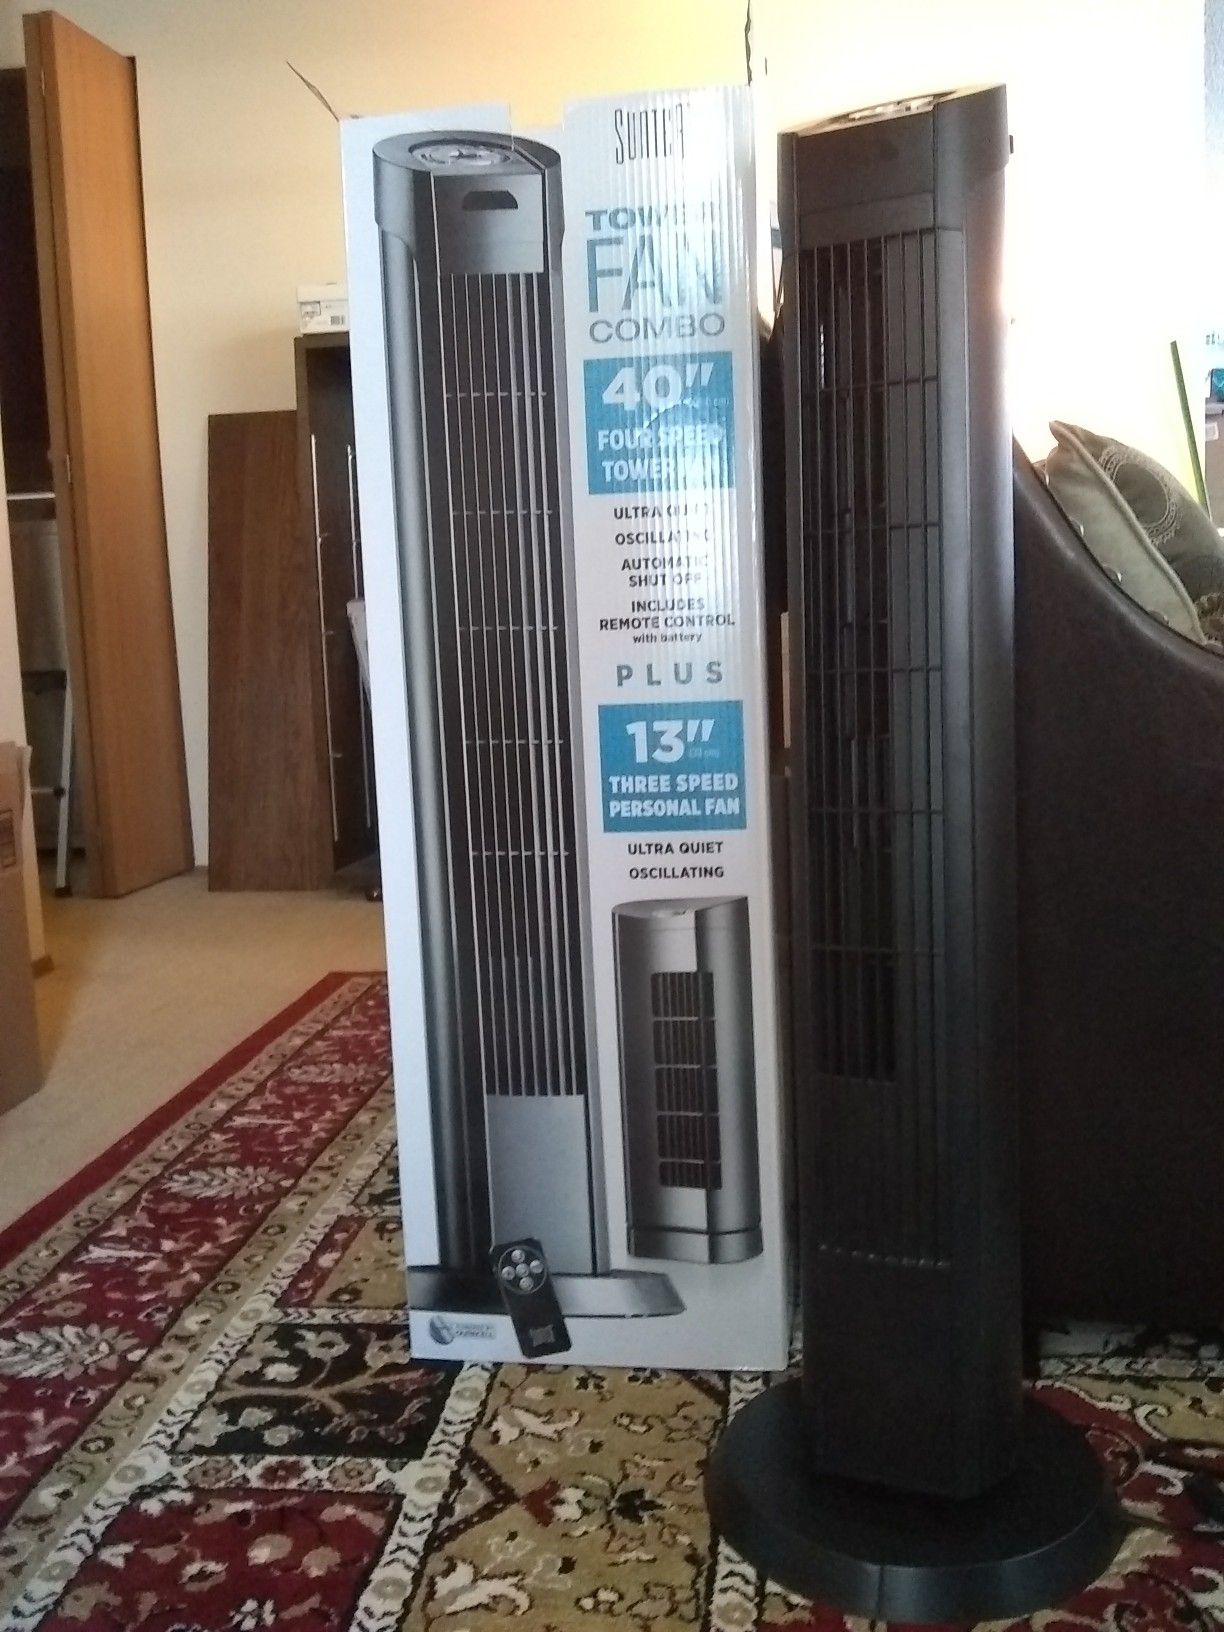 Upright 40" Tower Fan only (not the 13" desktop fan)